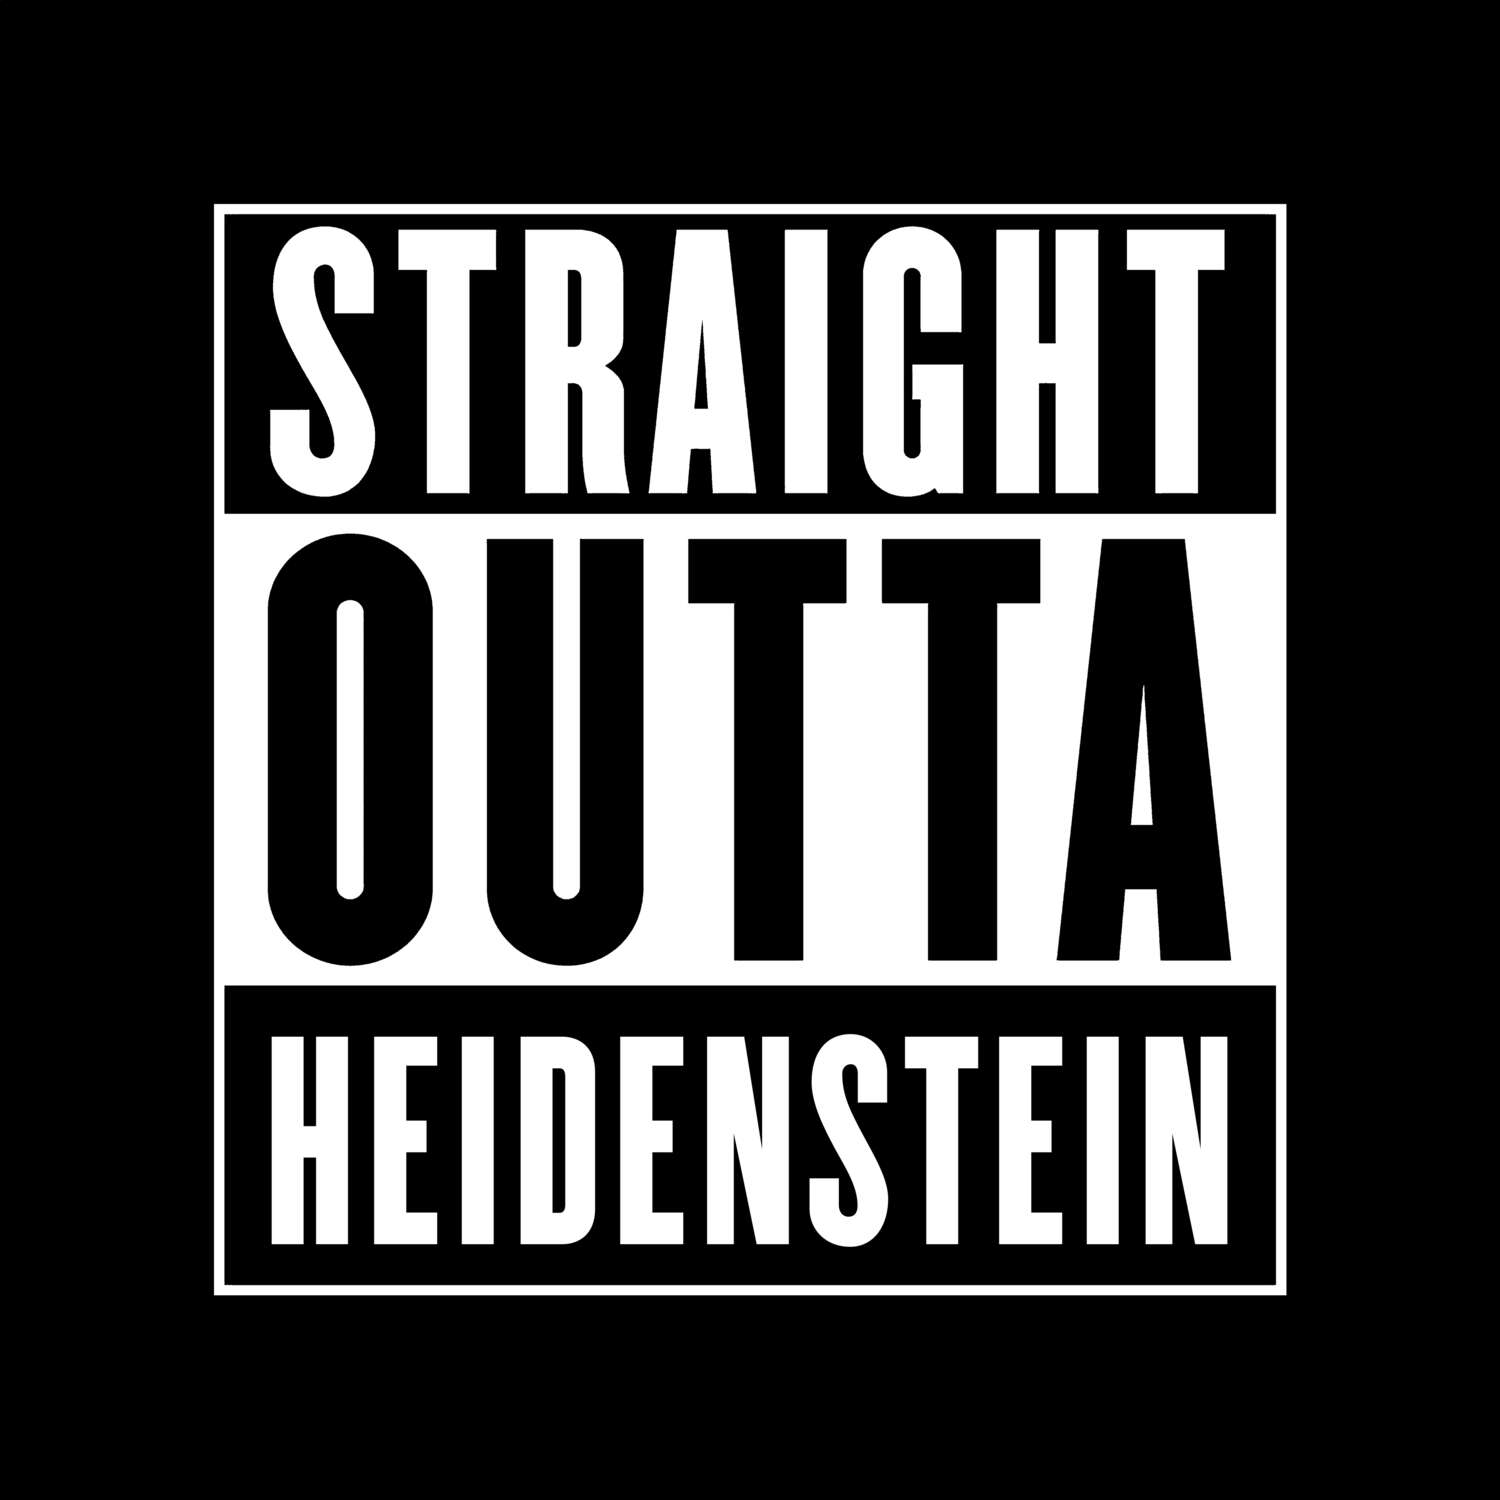 Heidenstein T-Shirt »Straight Outta«